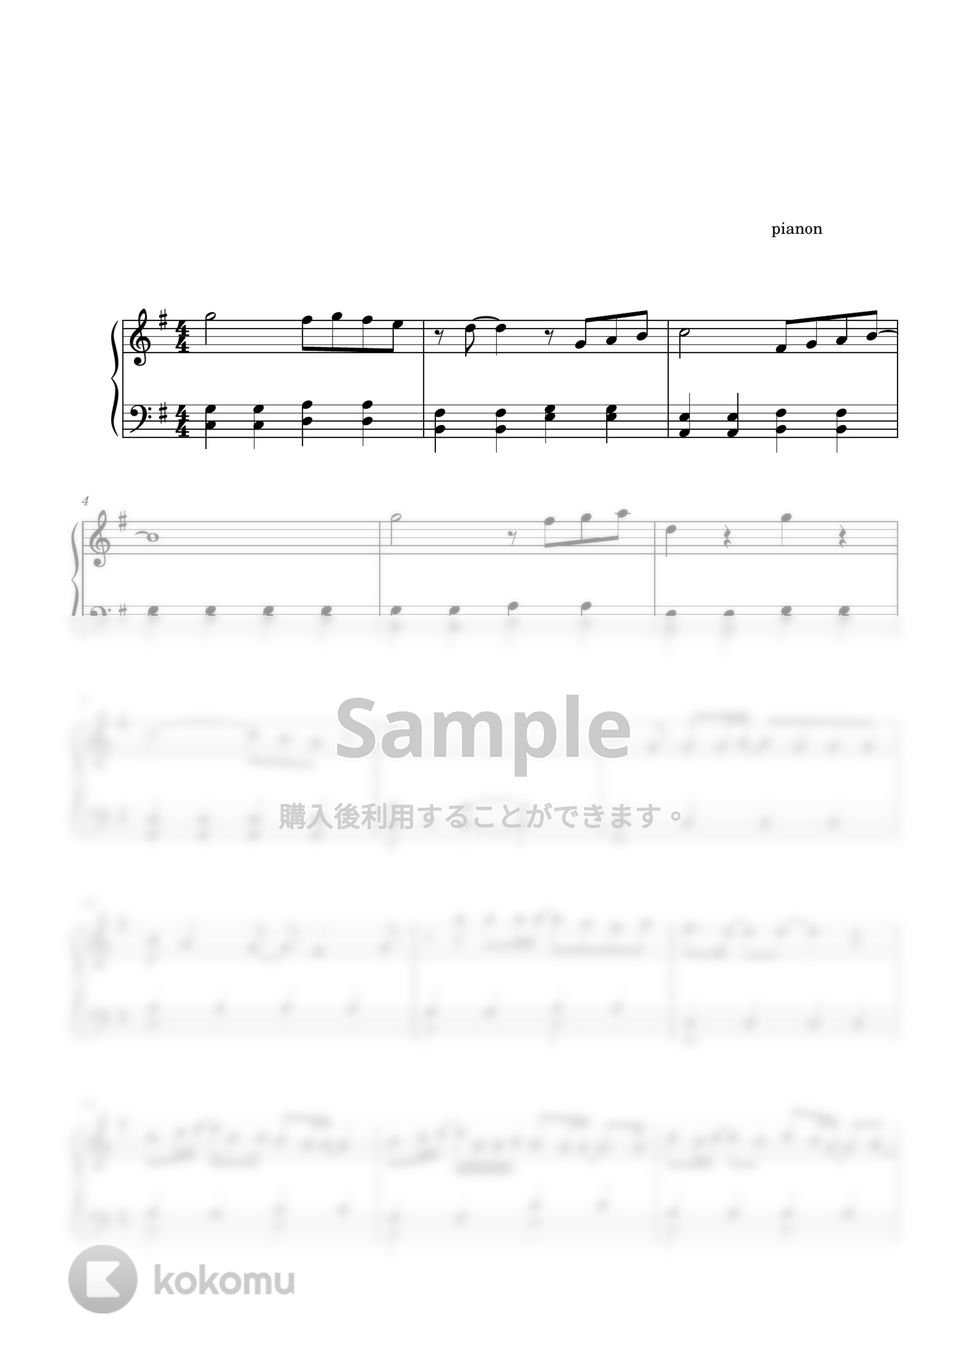 あいみょん - 君はロックを聴かない (ピアノ中級ソロ) by pianon